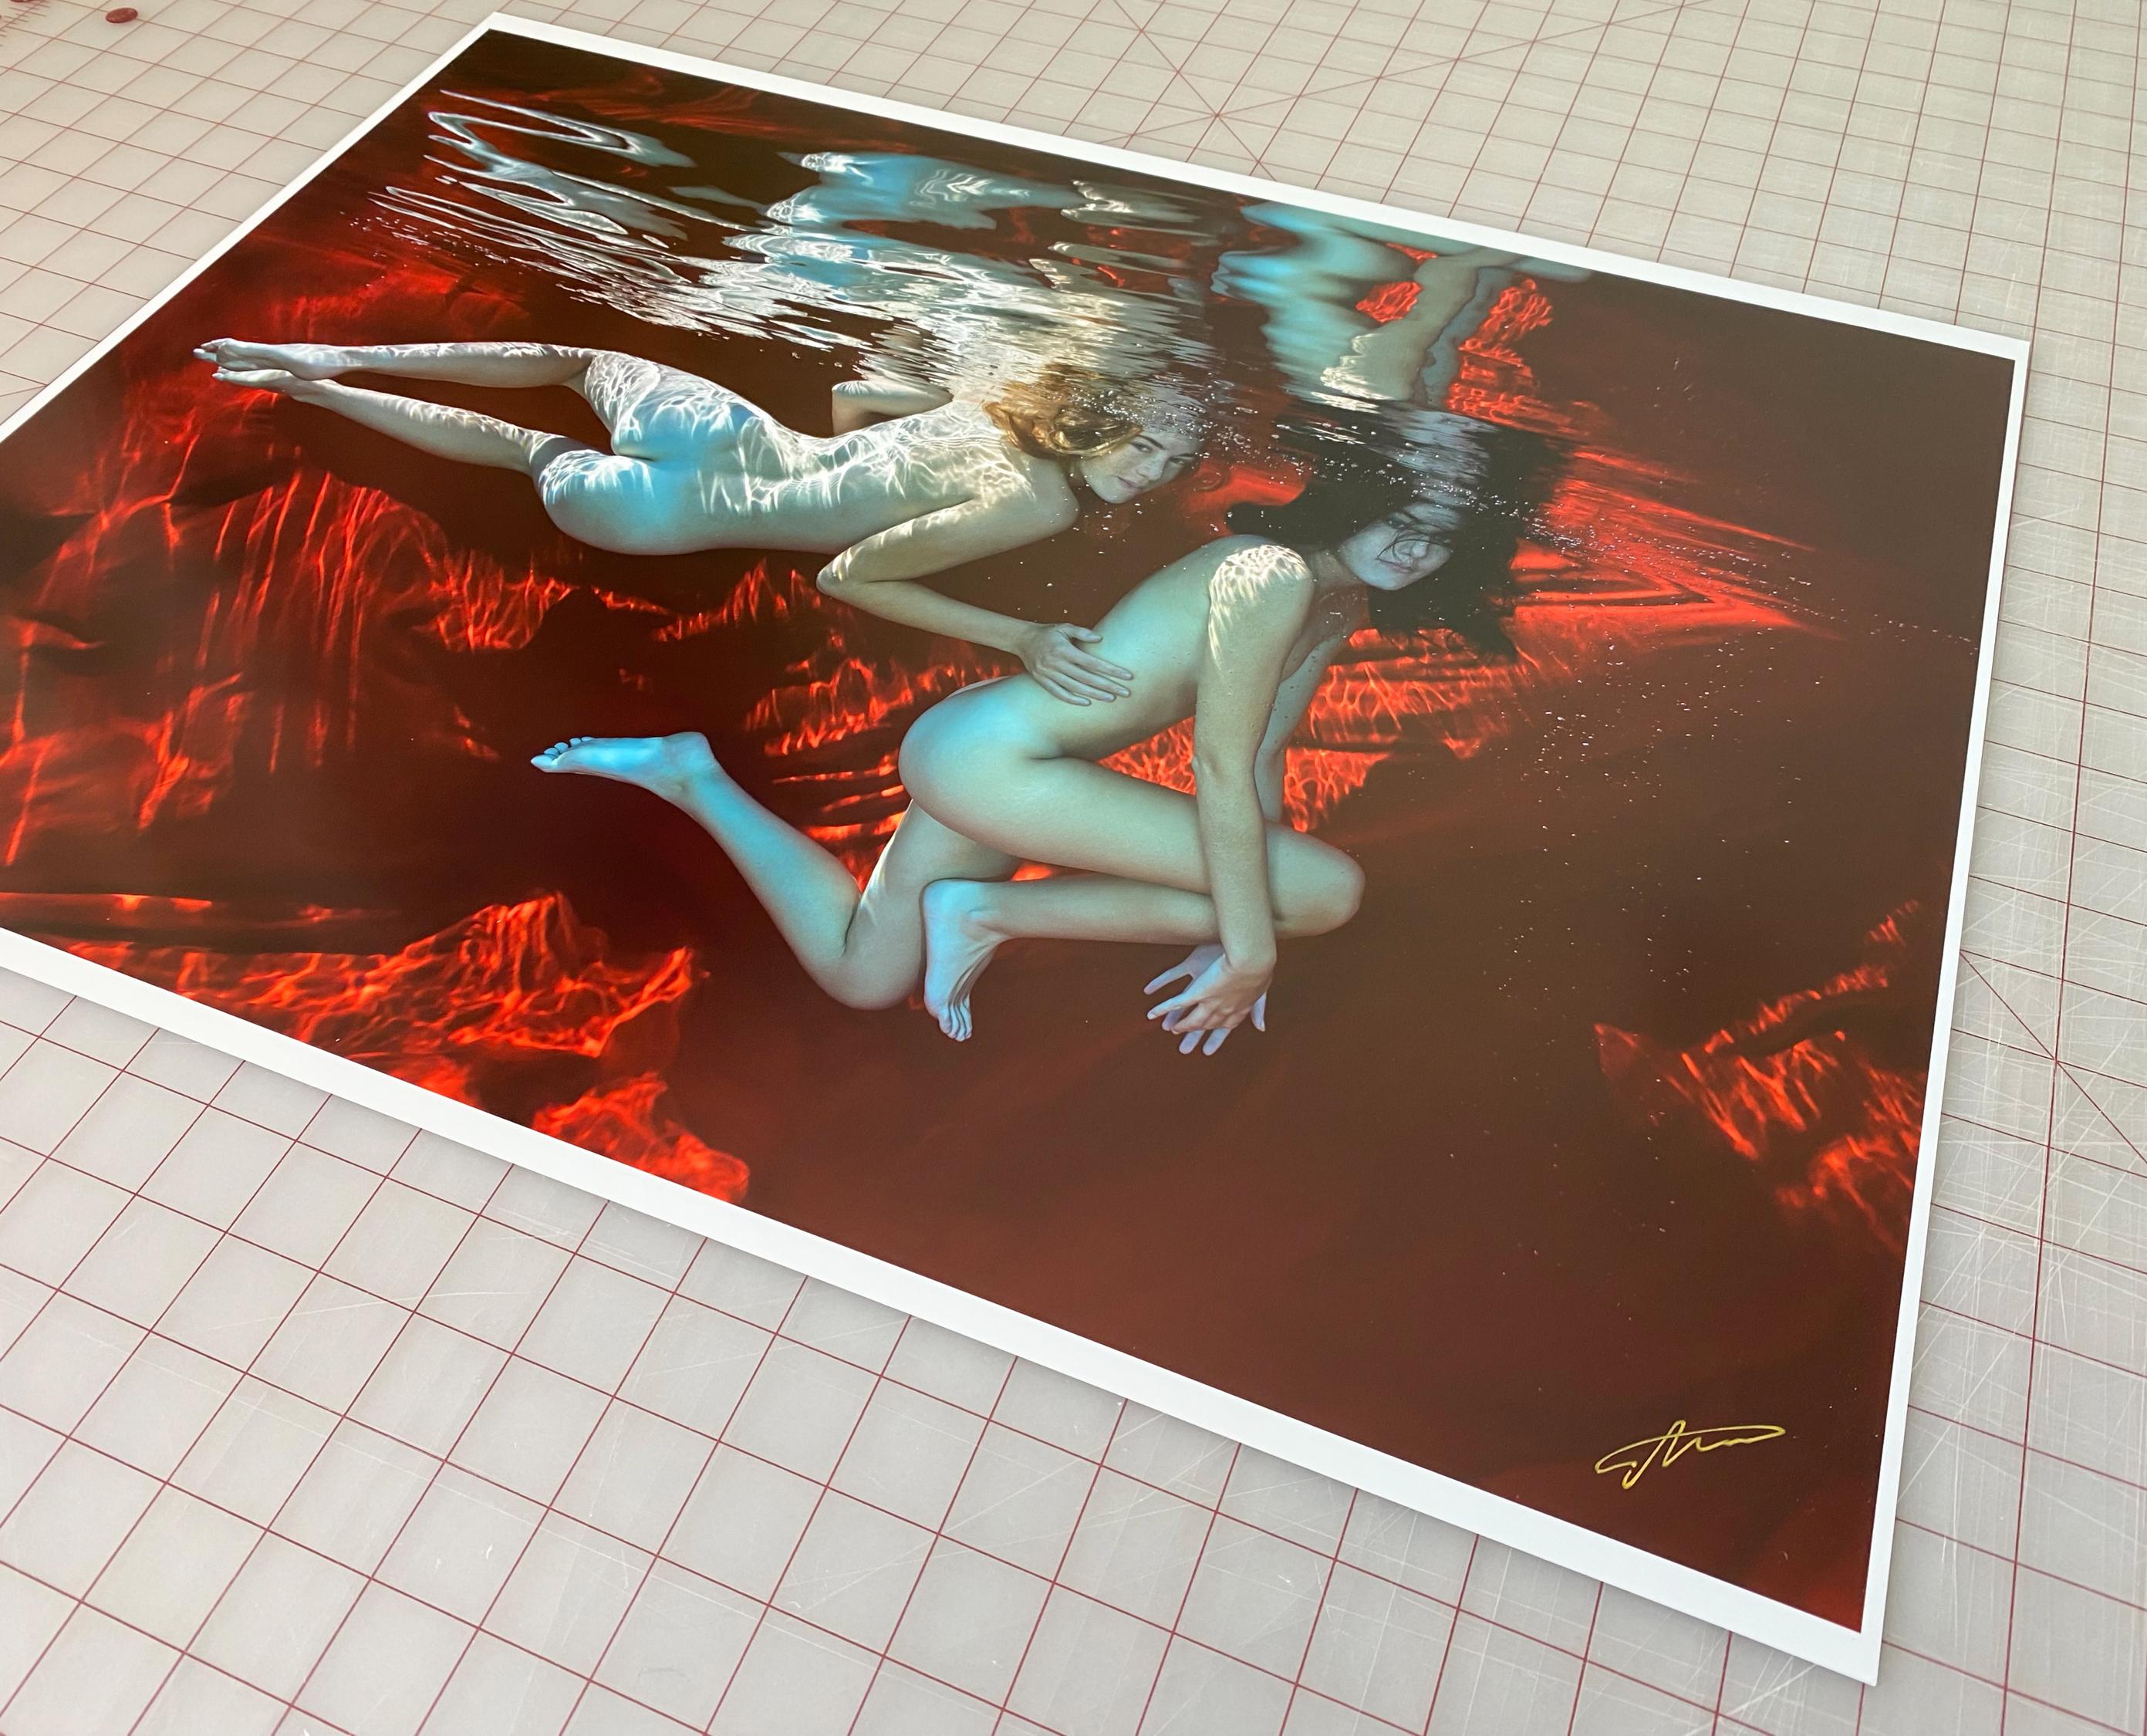 Ein Unterwasserfoto von zwei nackten Modellen auf rotem Hintergrund.

Digitaler Pigmentdruck in Galeriequalität auf Archivpapier, signiert vom Künstler. 
Limitierte Auflage von 24 Stück
Das Kunstwerk wird mit einem Echtheitszertifikat versehen, das